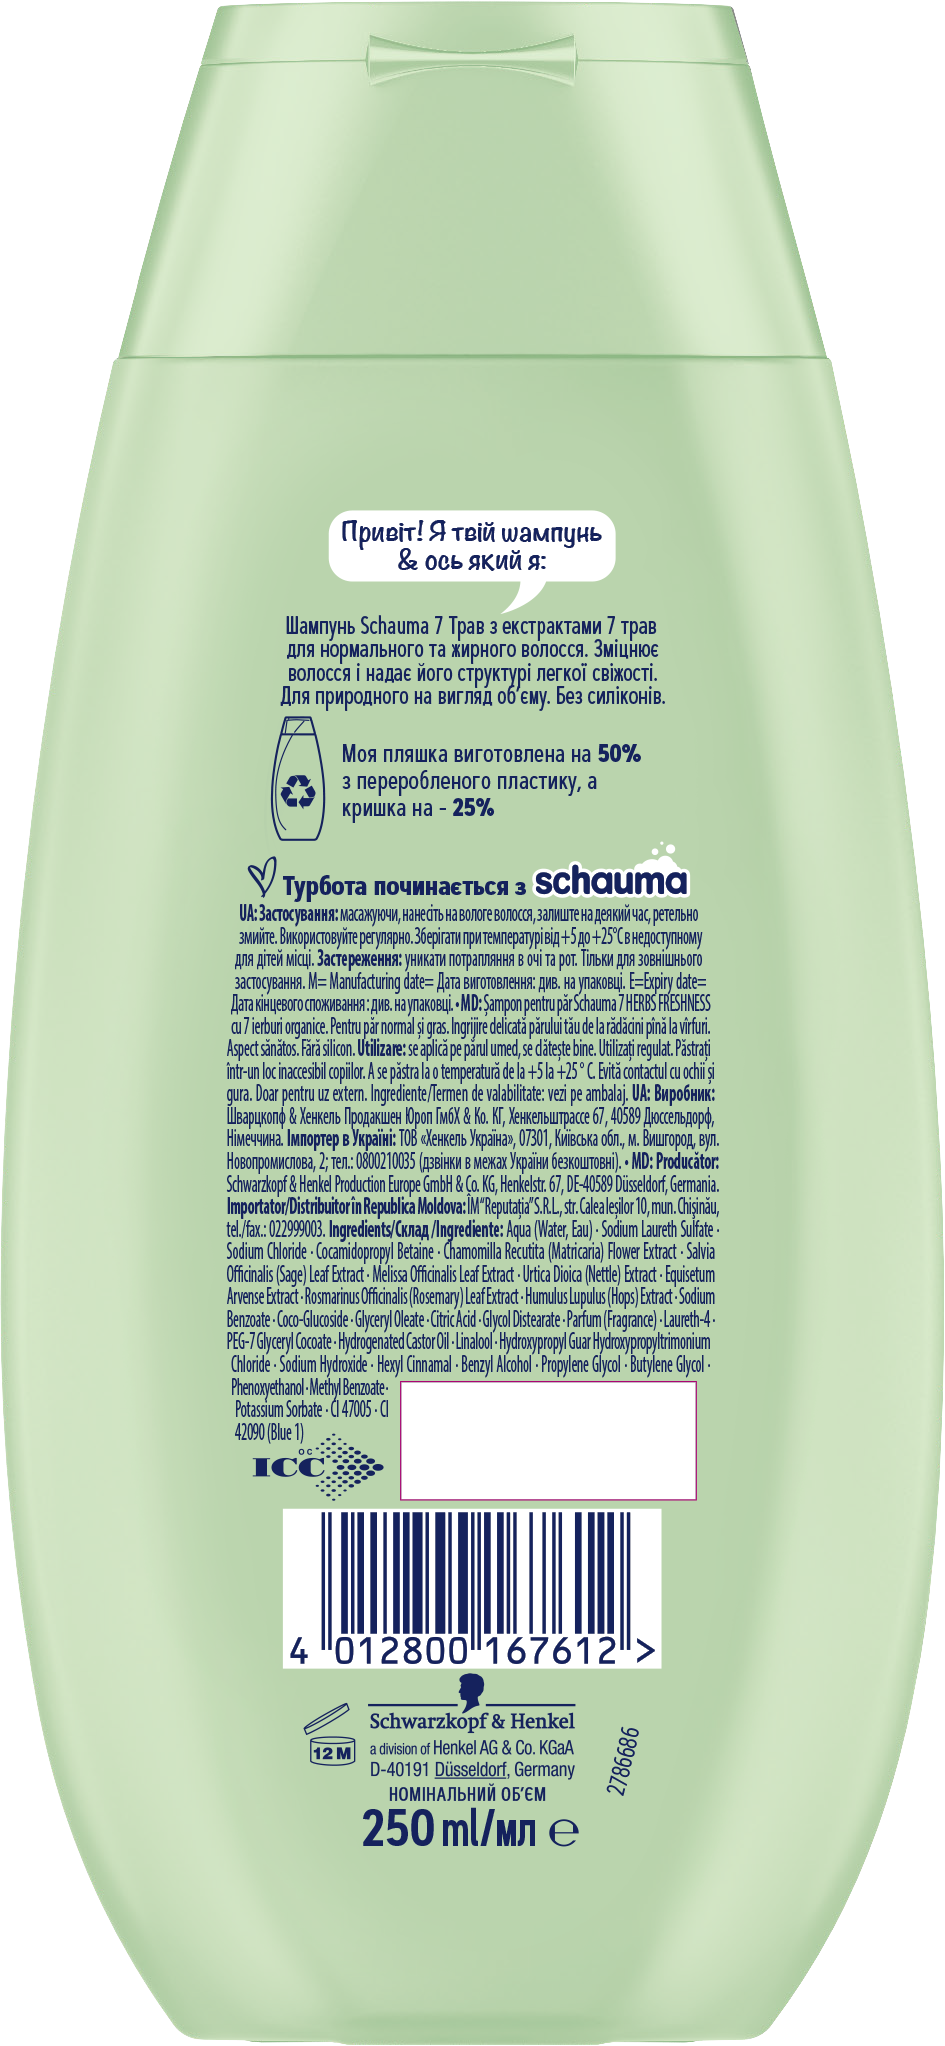 Шампунь Schauma 7 Трав, для нормальных и жирных волос, 250 мл - фото 2